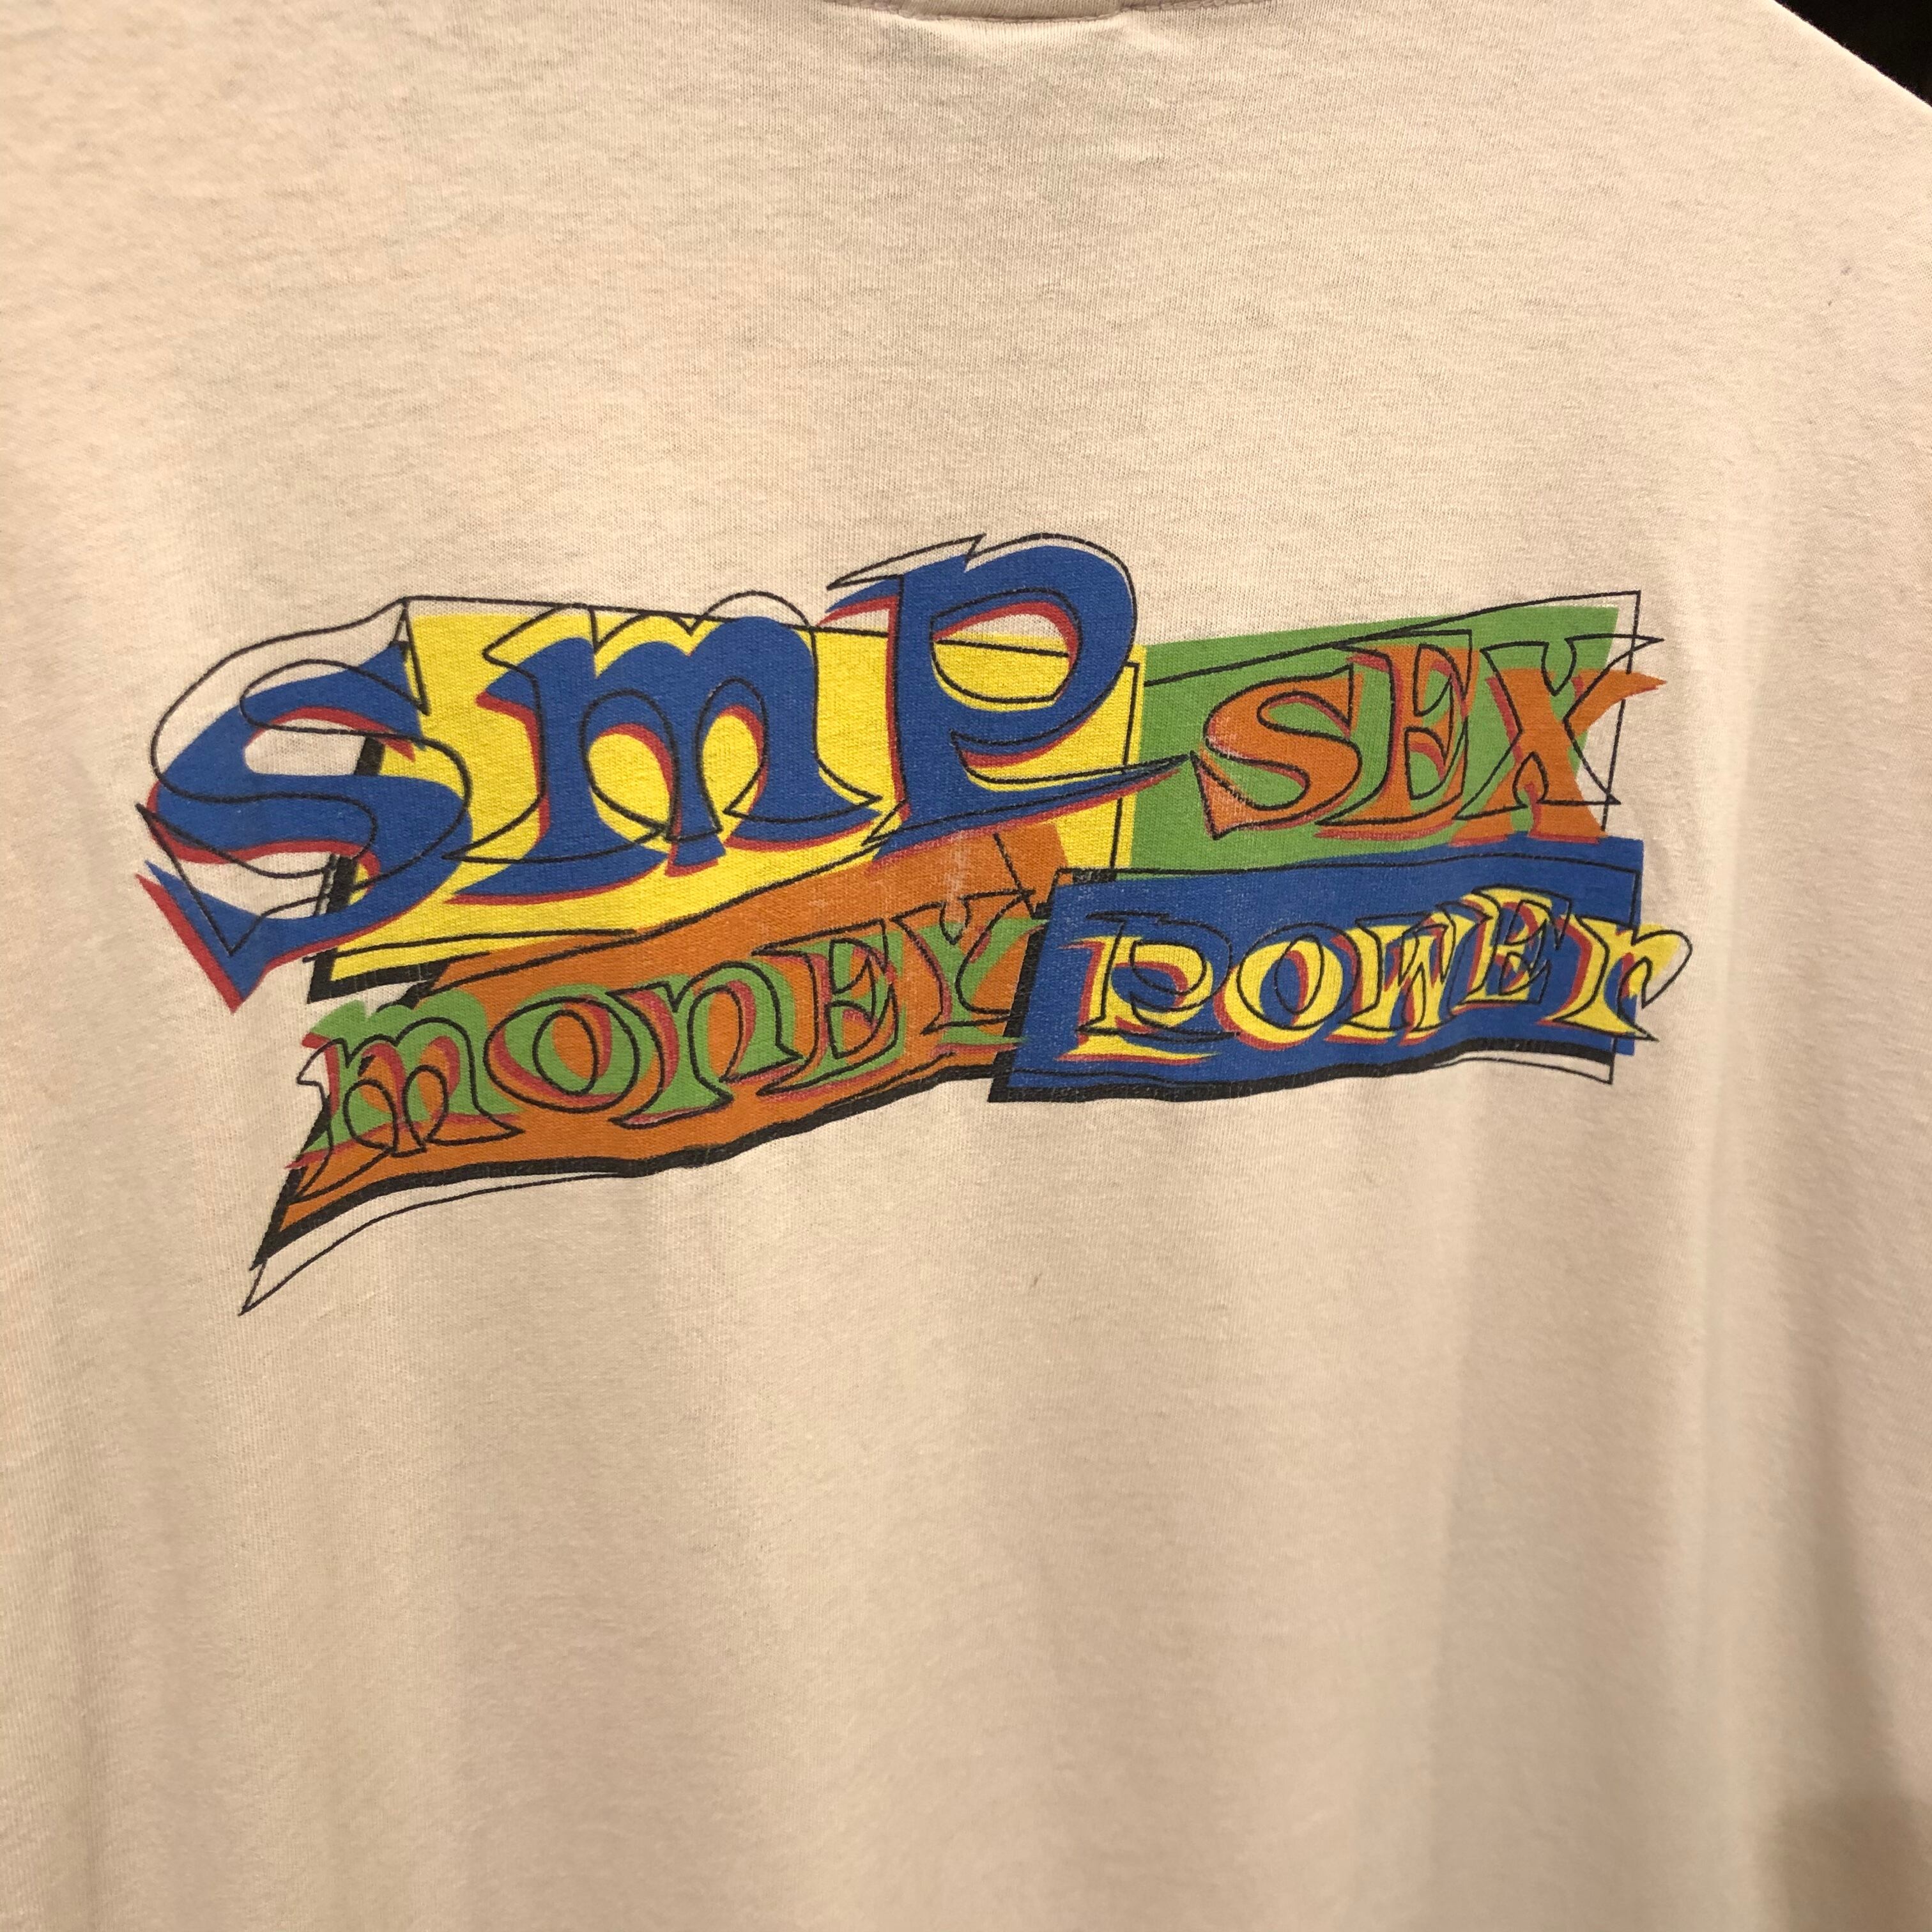 SMP ビンテージ USA製 Tシャツ 90s サーフ スケーター